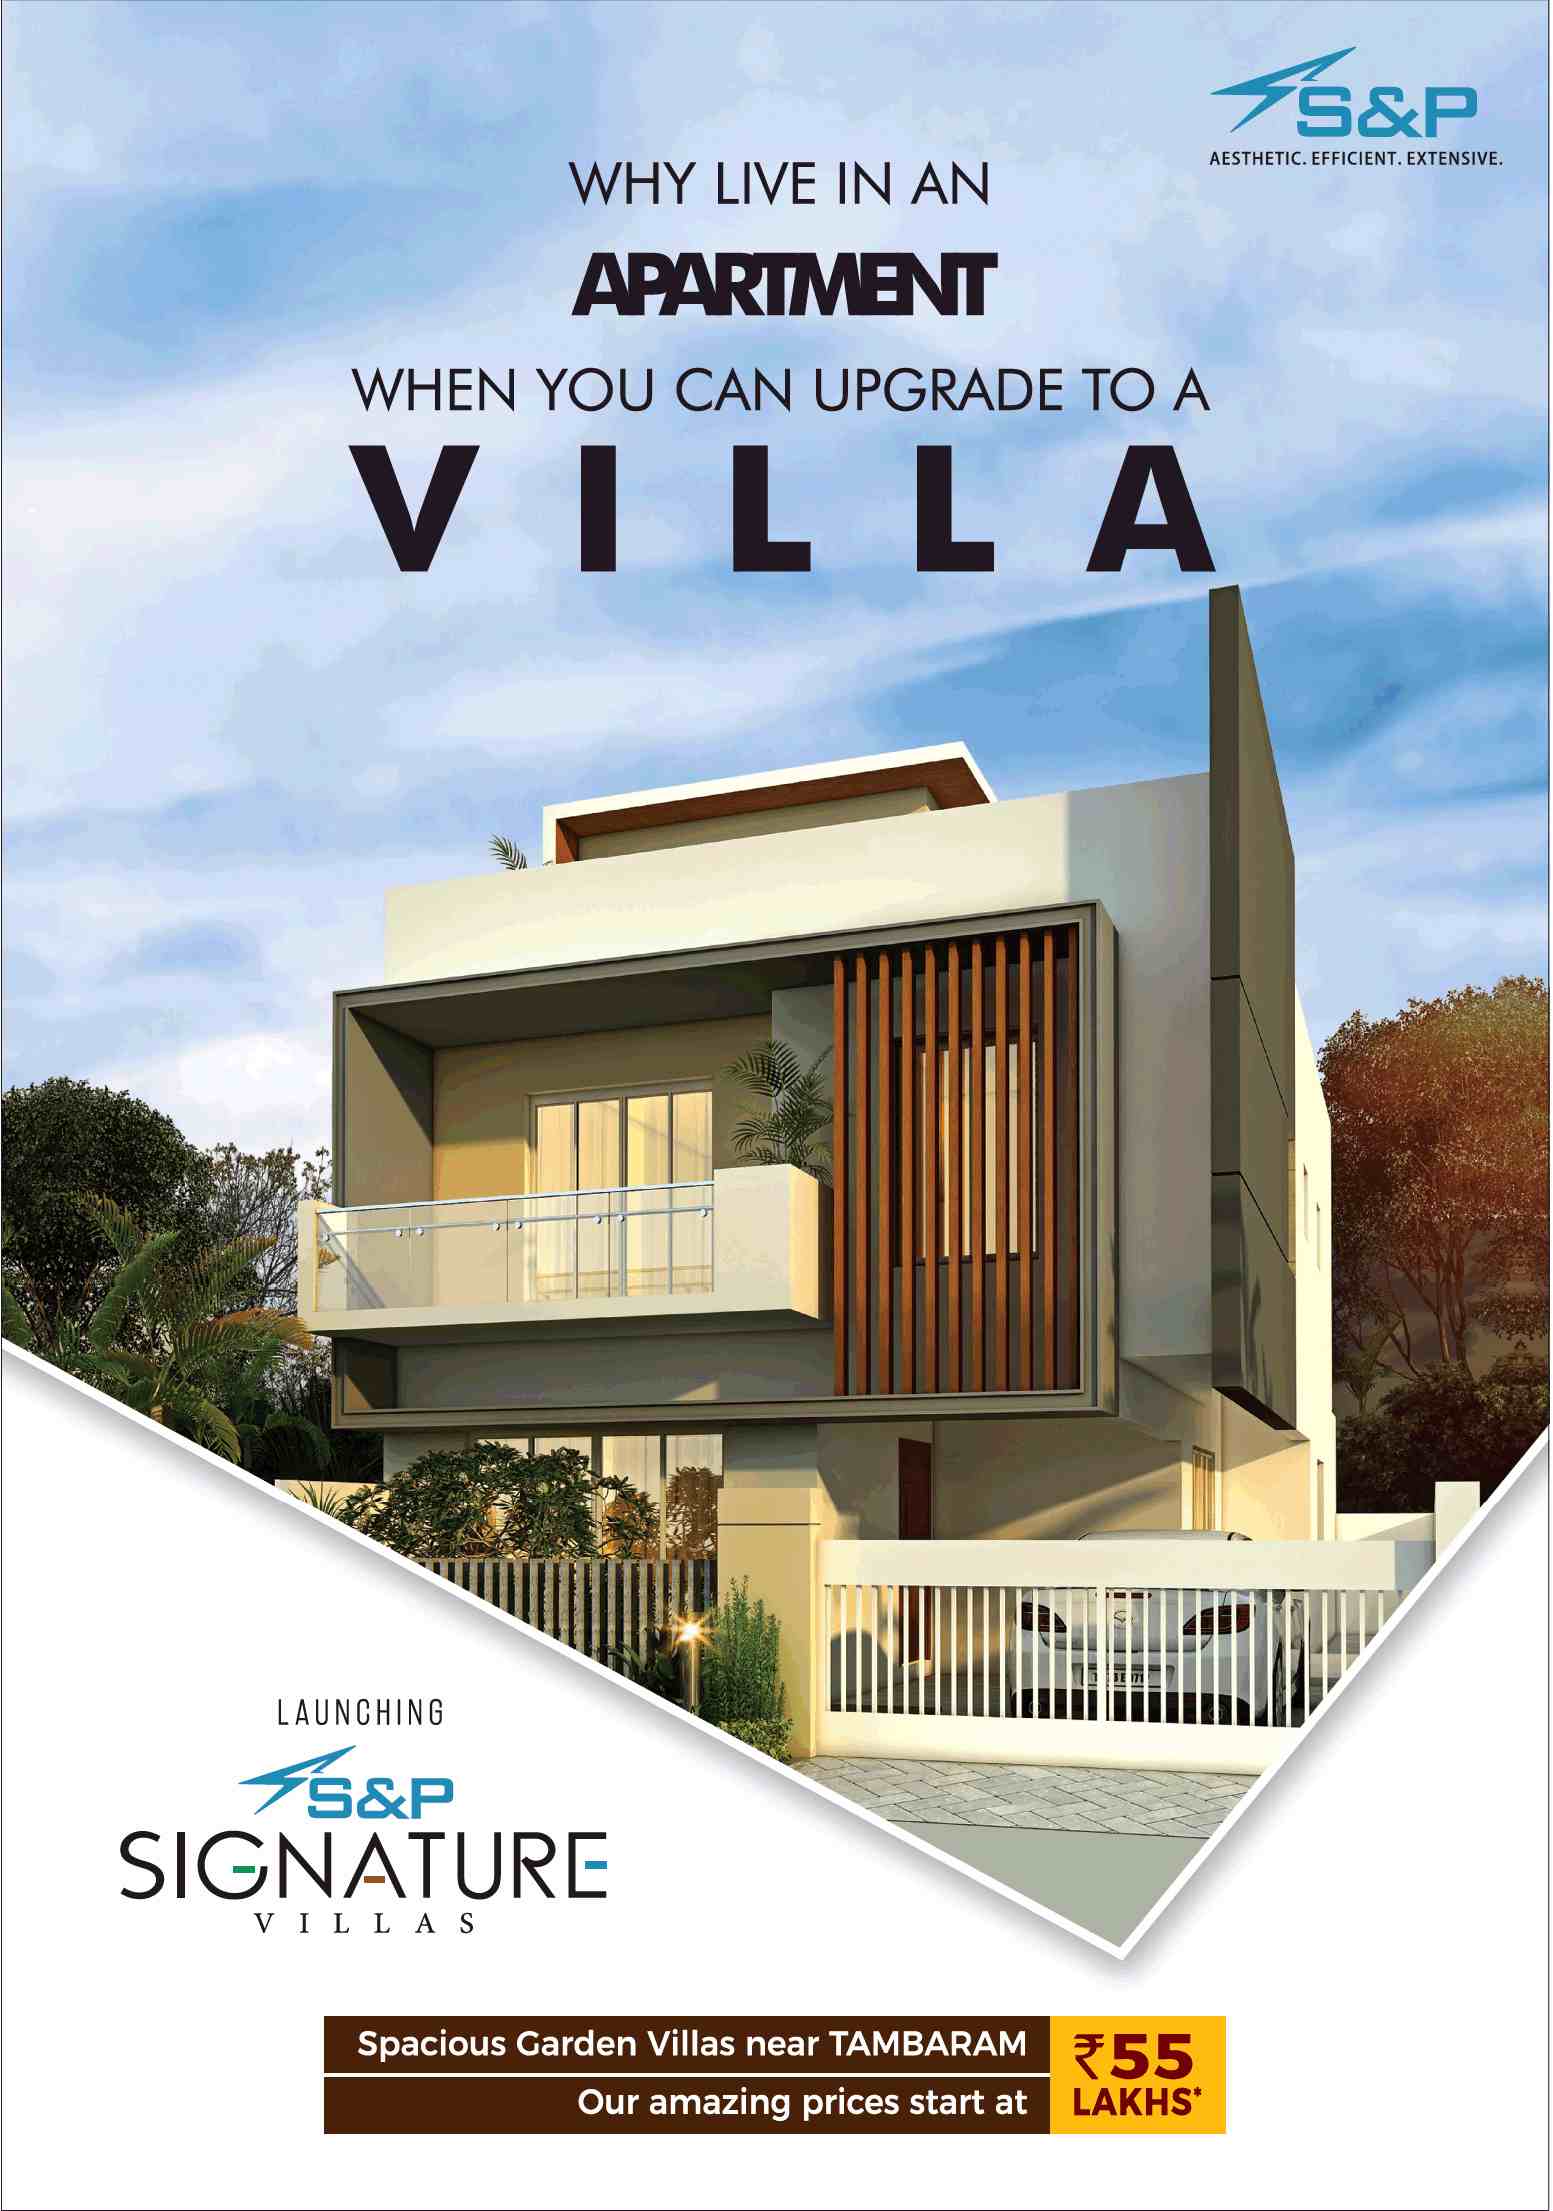 Launching S&P Signature Villas at Tambaram, Chennai Update